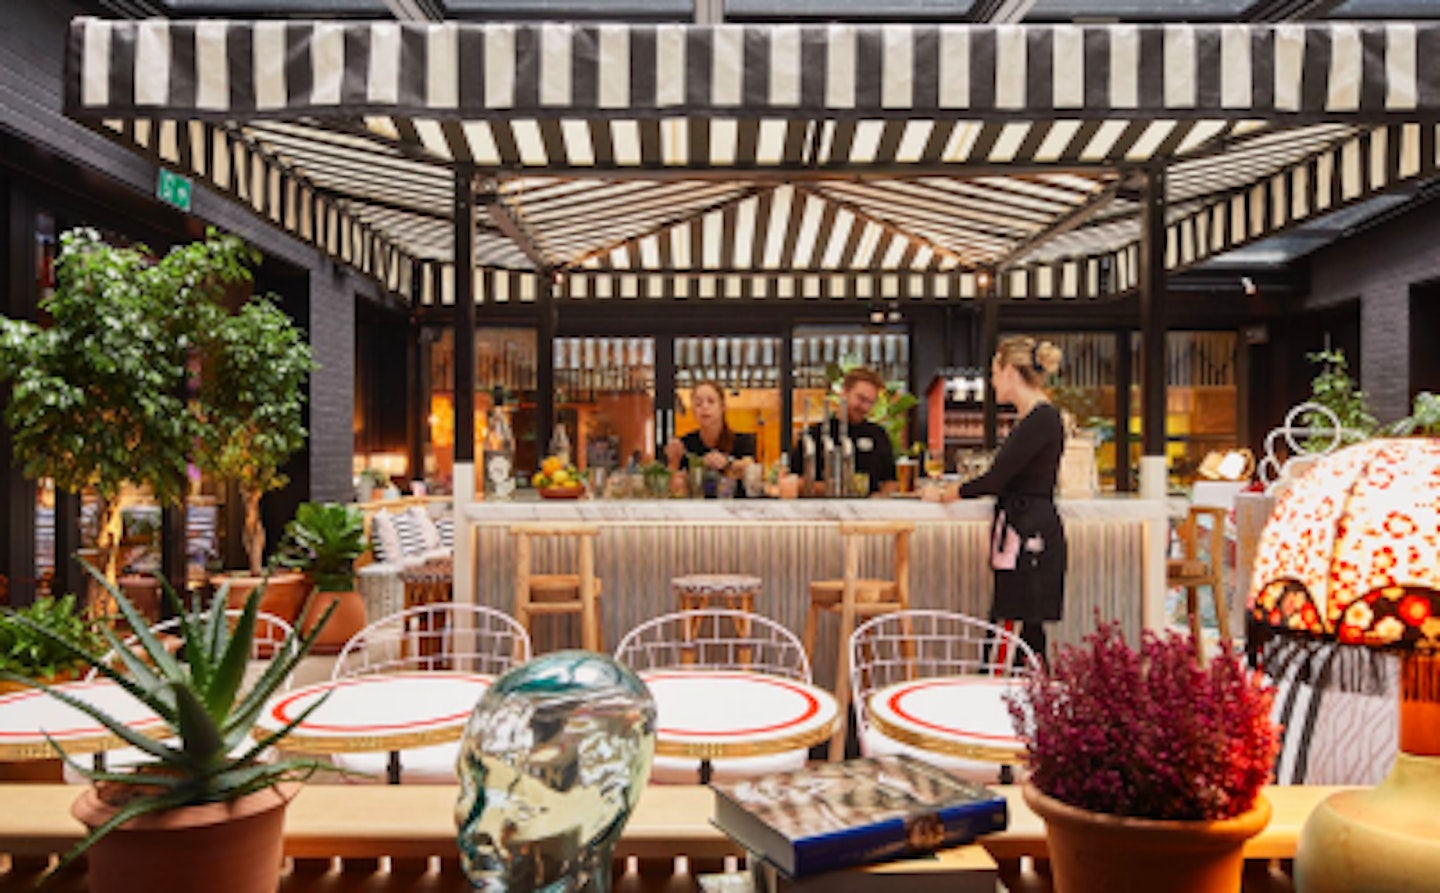 Best Restaurants With Outdoor Seating in London - Grazia